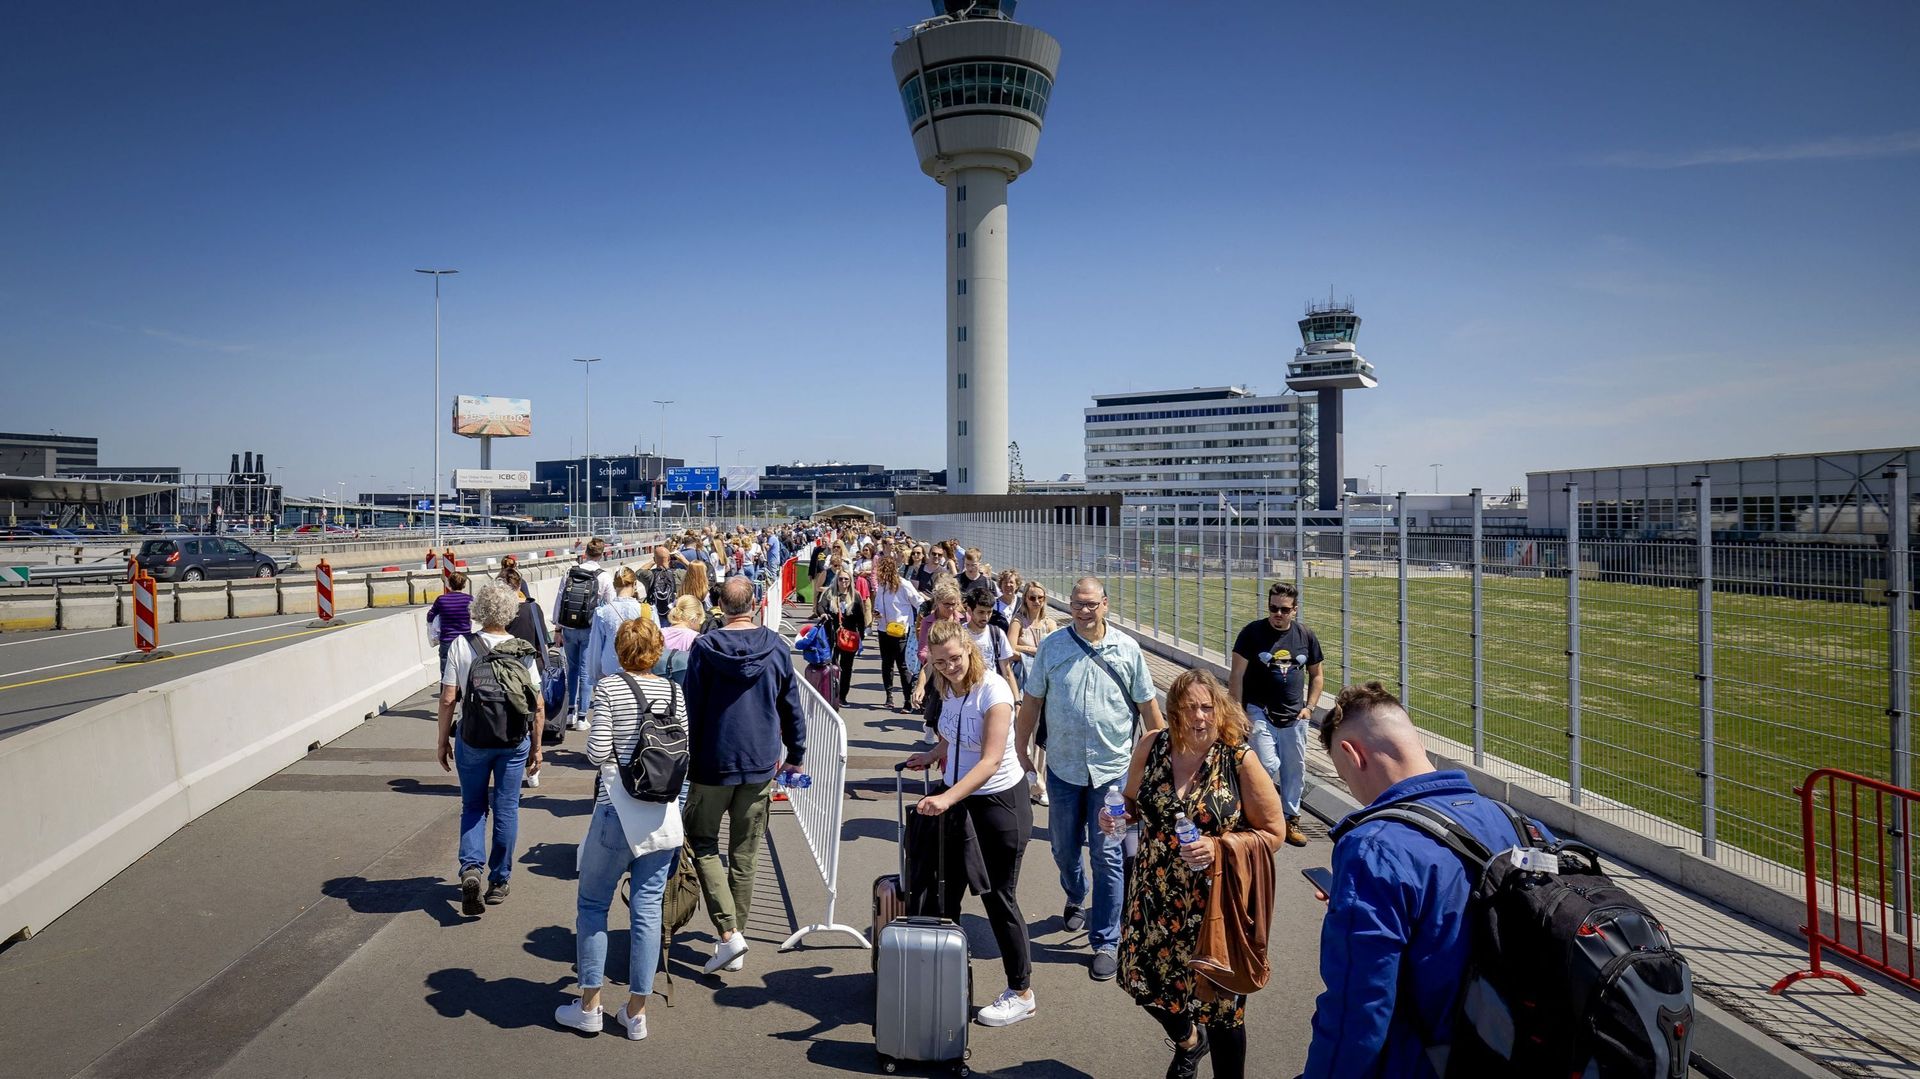 Incapace di gestire la folla, l’aeroporto di Amsterdam-Schiphol è stato costretto a rifiutare l’atterraggio dei voli europei